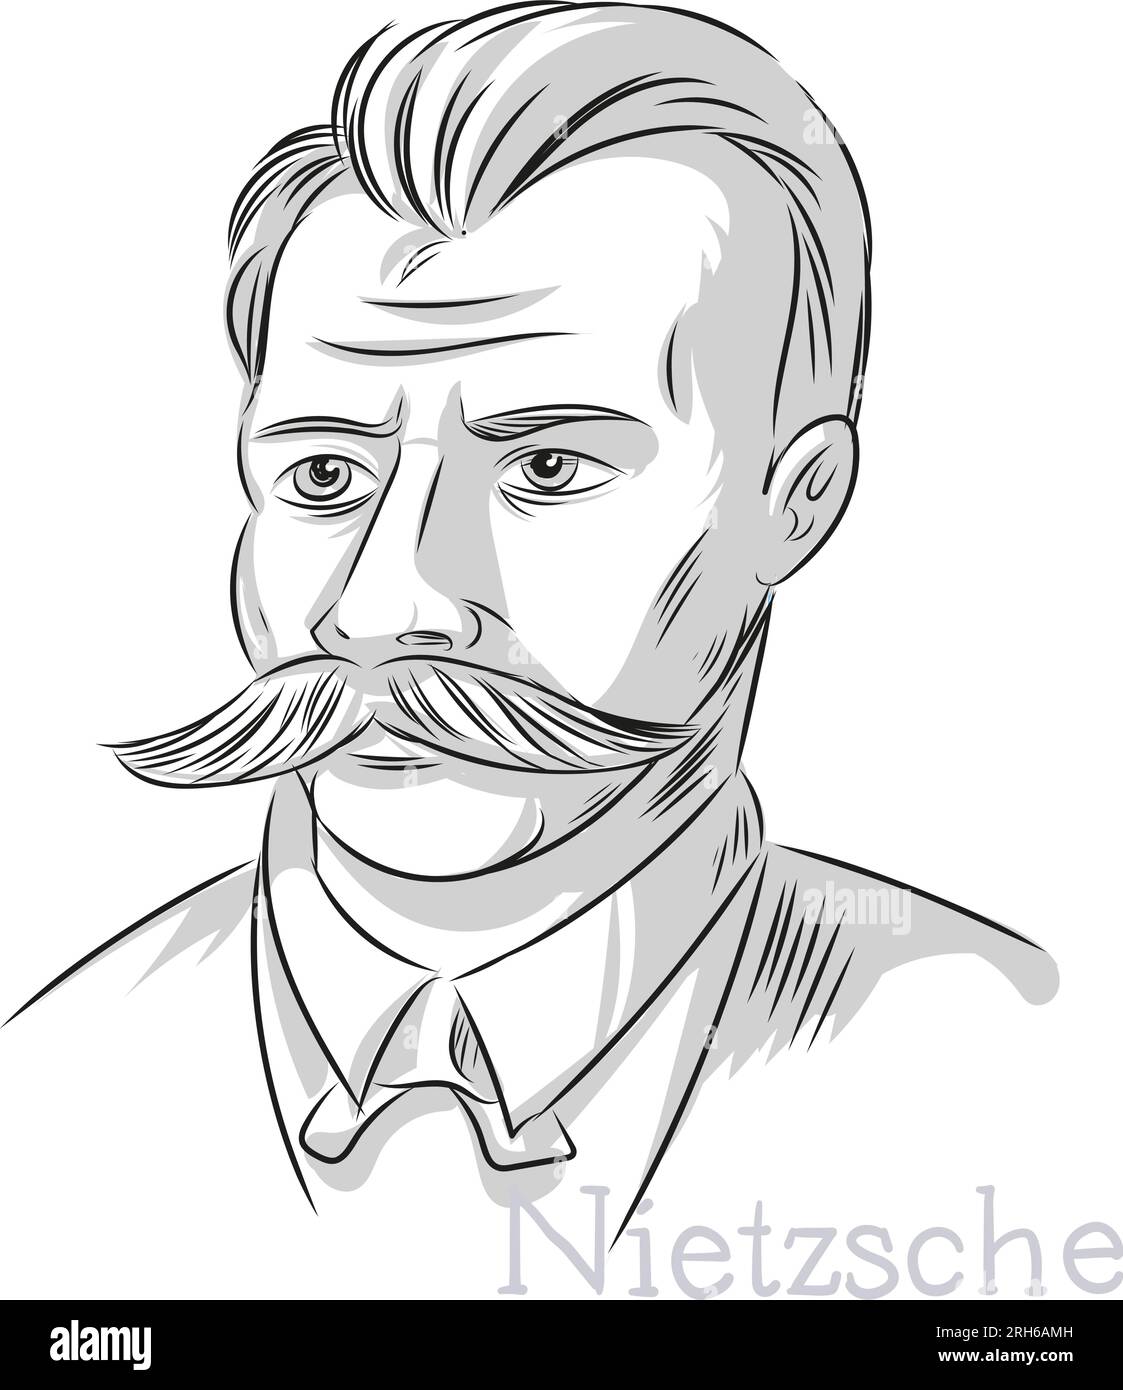 Der Philosoph Nietzsche, handgezeichnet, Kunstporträt-Illustration Stock Vektor